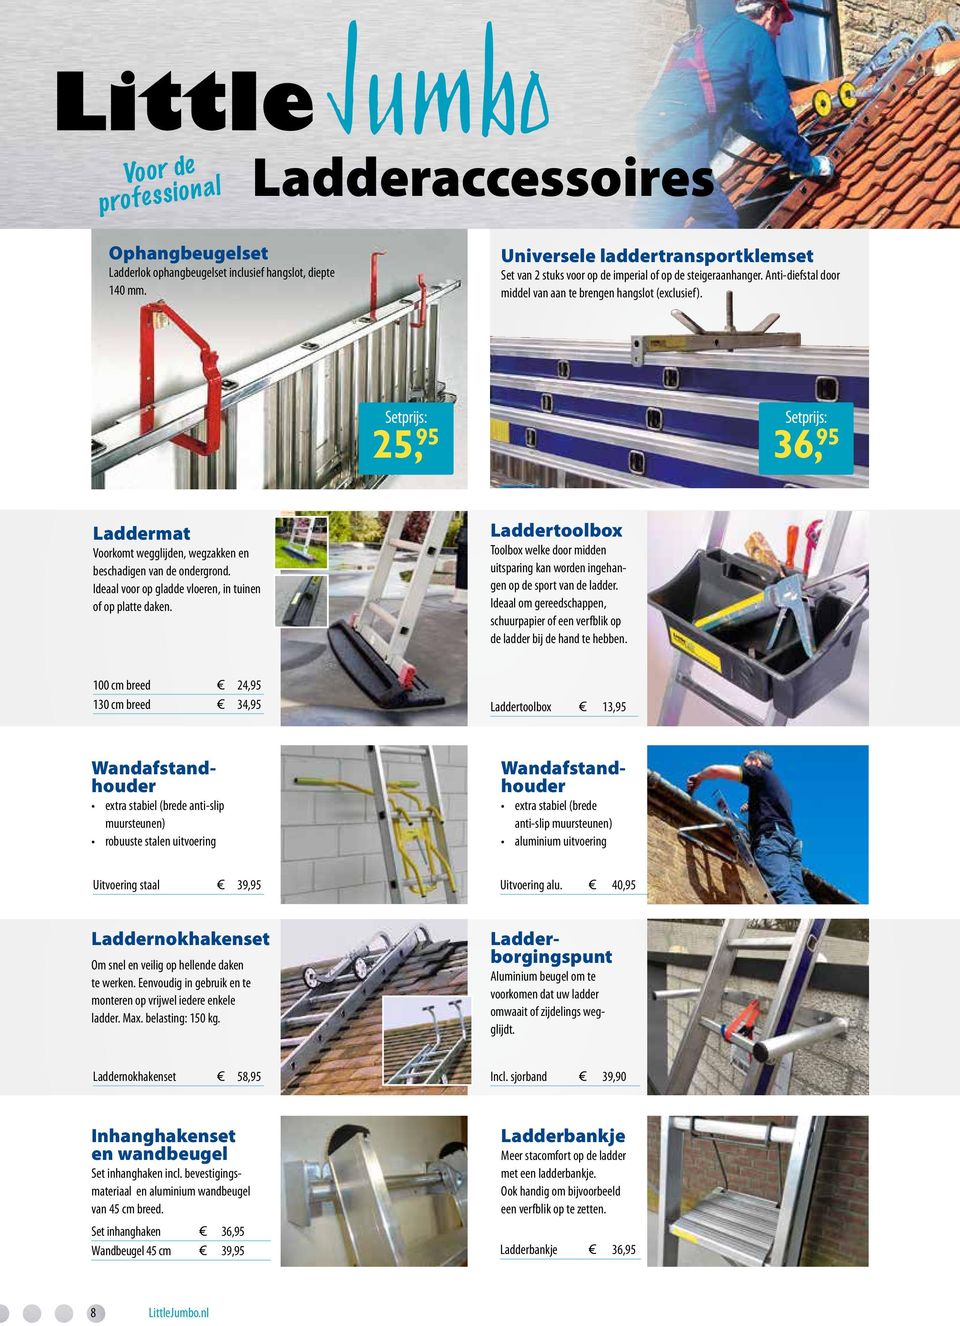 Ideaal voor op gladde vloeren, in tuinen of op platte daken. Laddertoolbox Toolbox welke door midden uitsparing kan worden ingehangen op de sport van de ladder.